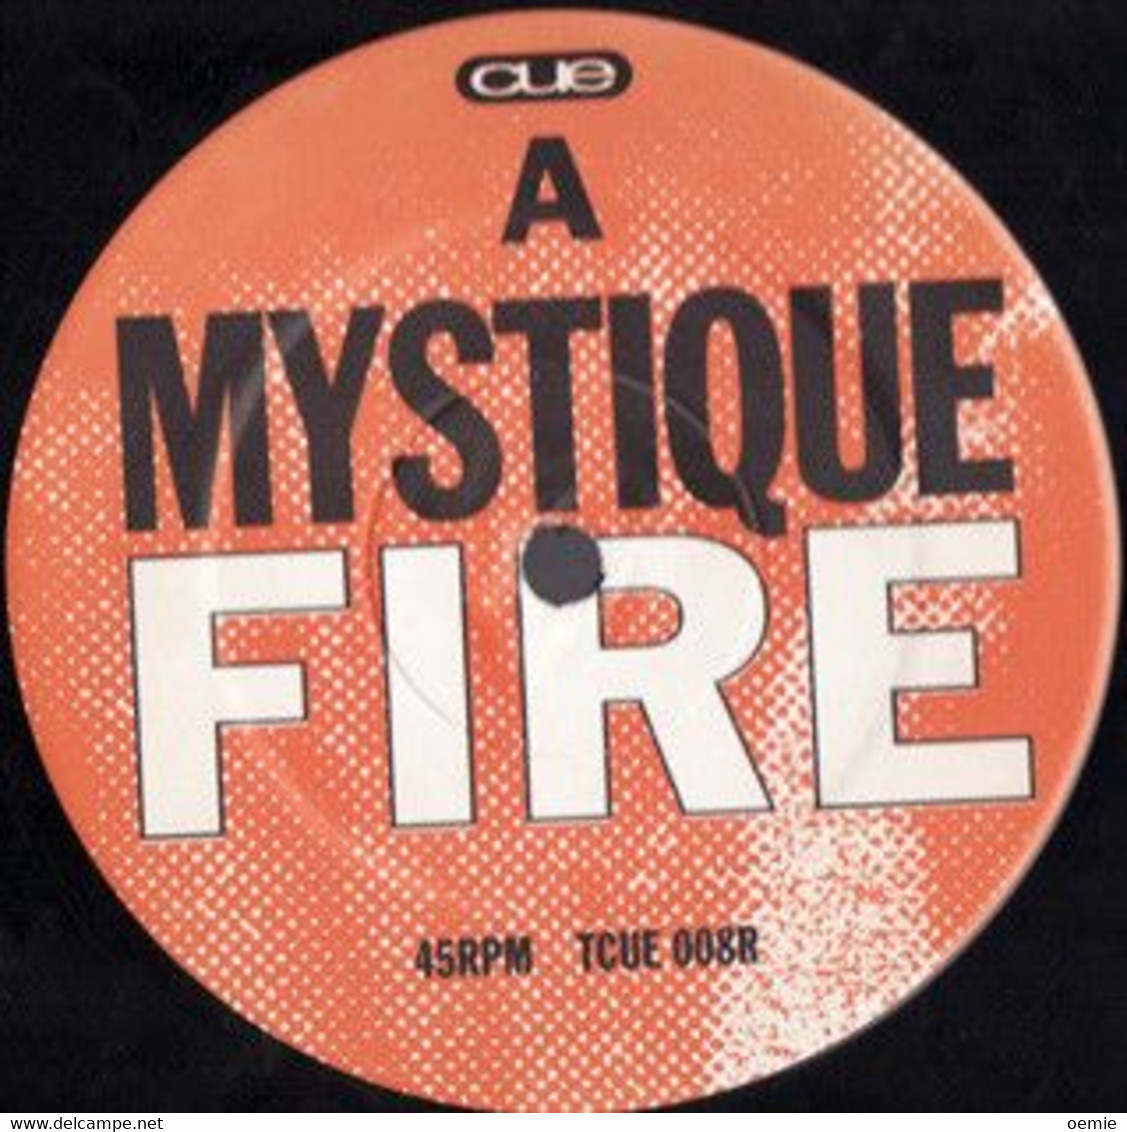 MYSTIQUE FIRE  °  JOEY NEGRO / ENERGIZE / ORIGINAL MIXES - 45 T - Maxi-Single